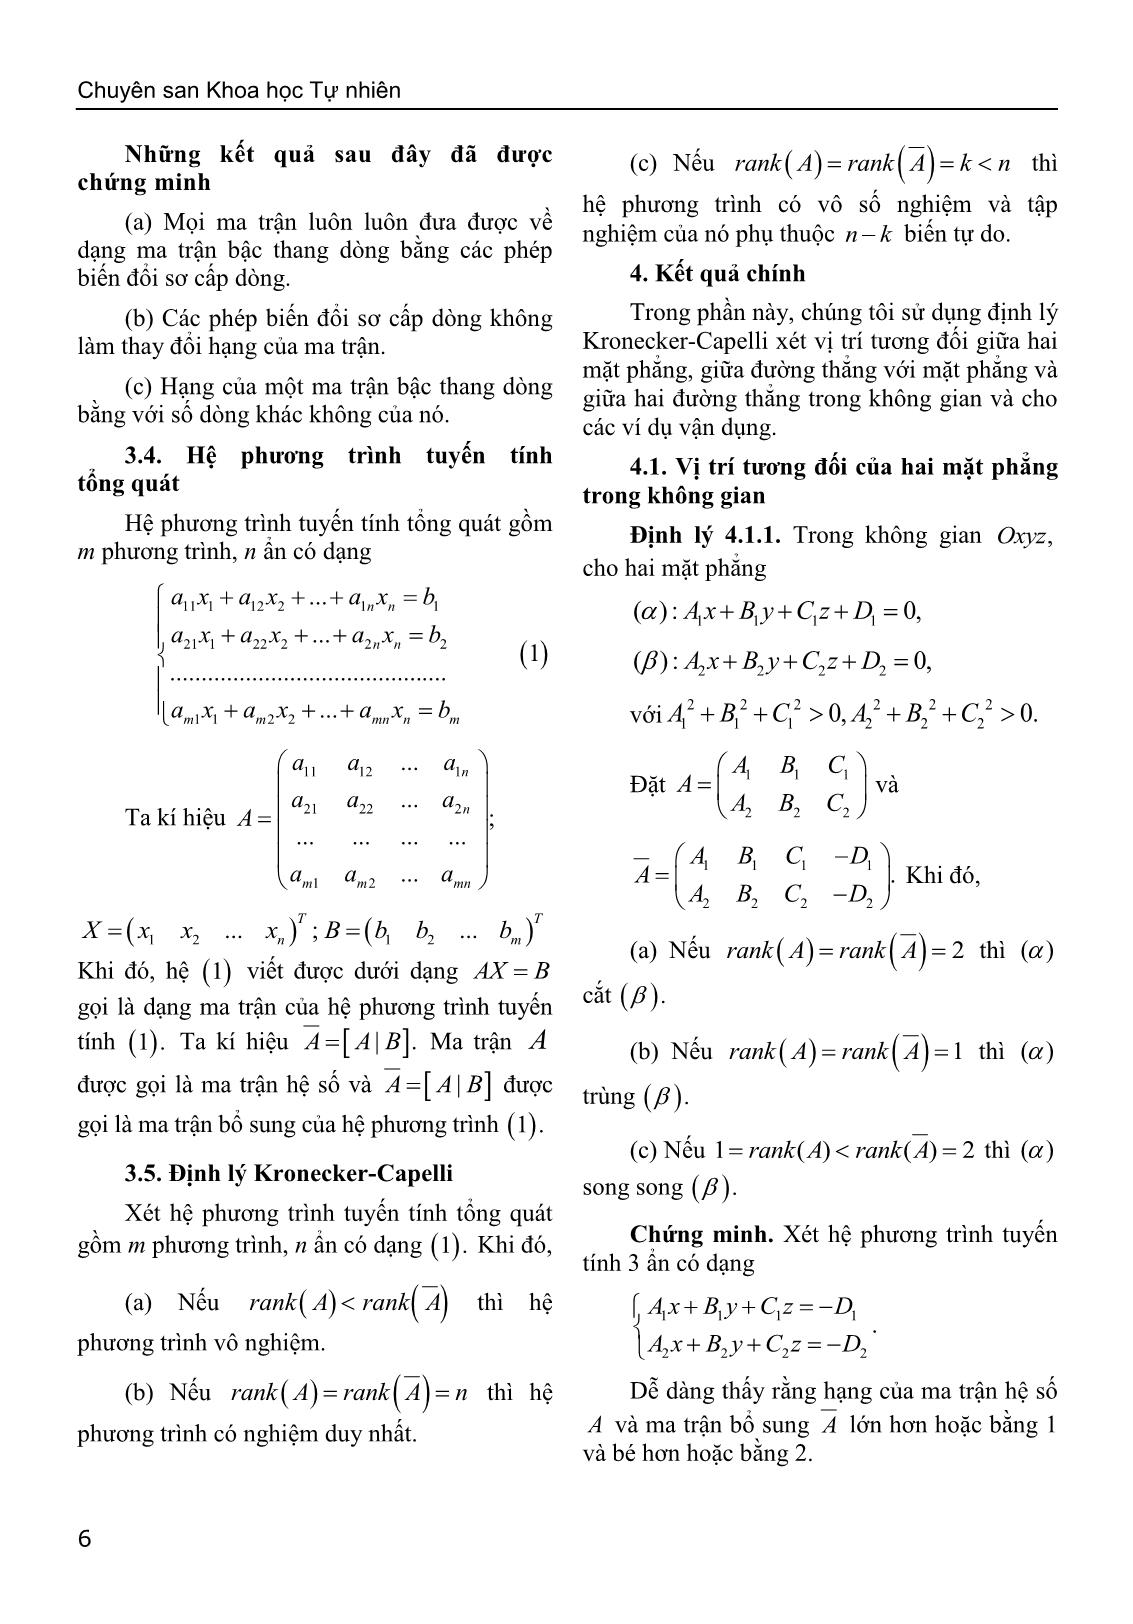 Sử dụng định lý Kronecker-Capelli giải bài toán về vị trí tương đối của hình học giải tích trong không gian trang 4